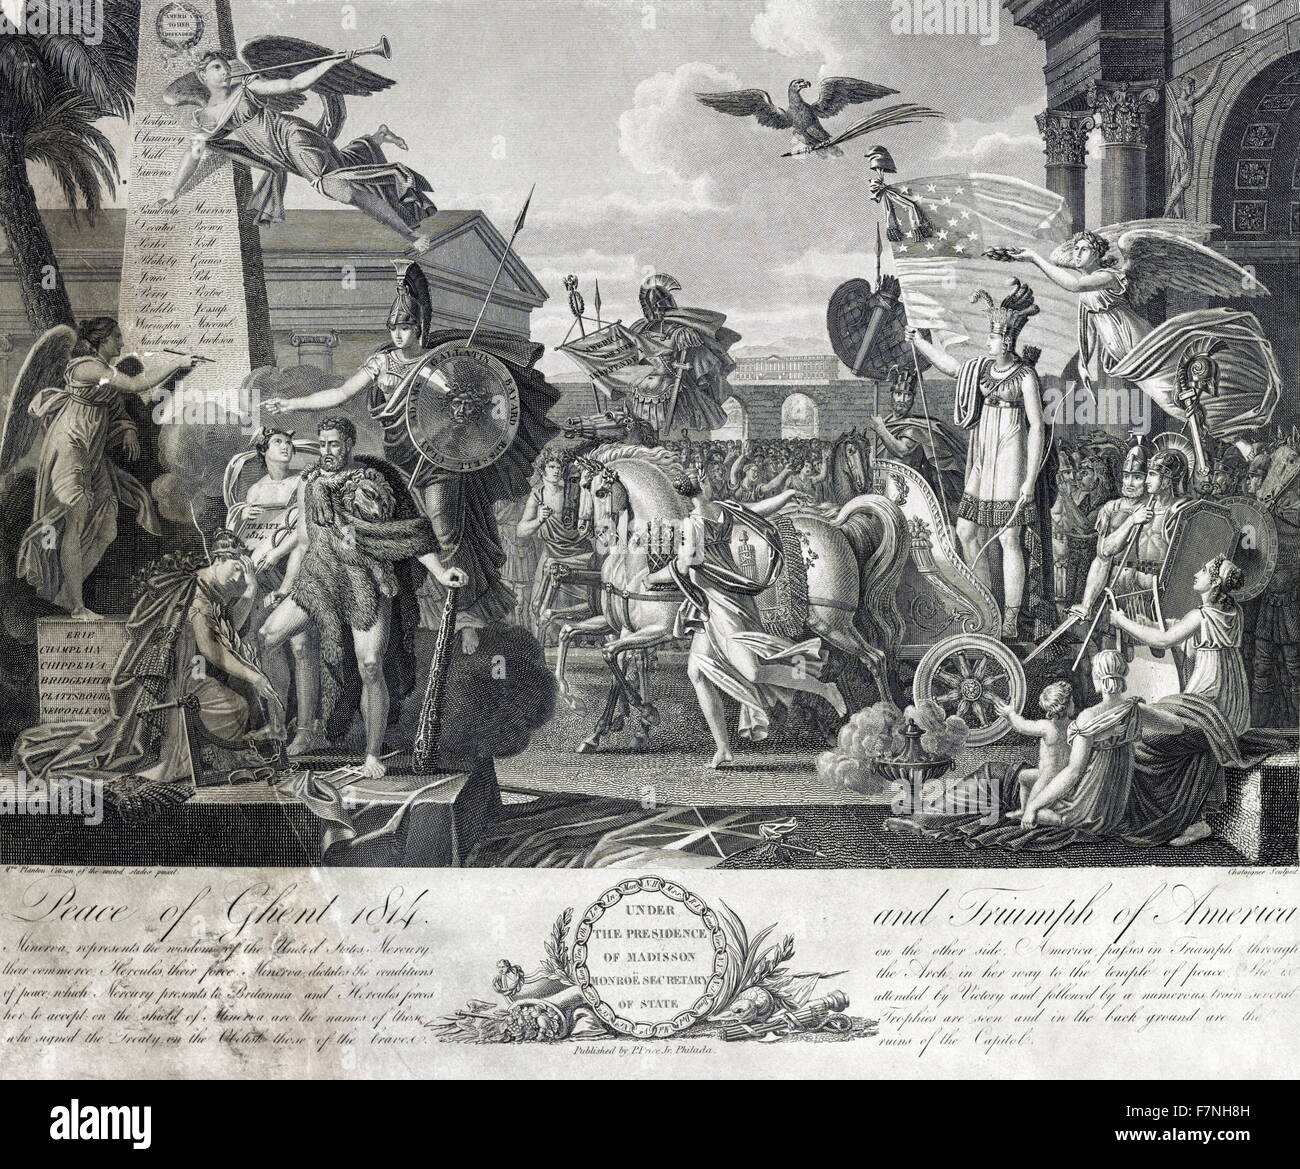 Der Vertrag von Gent, unterzeichneten am 24. Dezember 1814 in Gent, wurde der Friedensvertrag, der Ende des Krieges von 1812 zwischen den Vereinigten Staaten und Großbritannien. Stockfoto